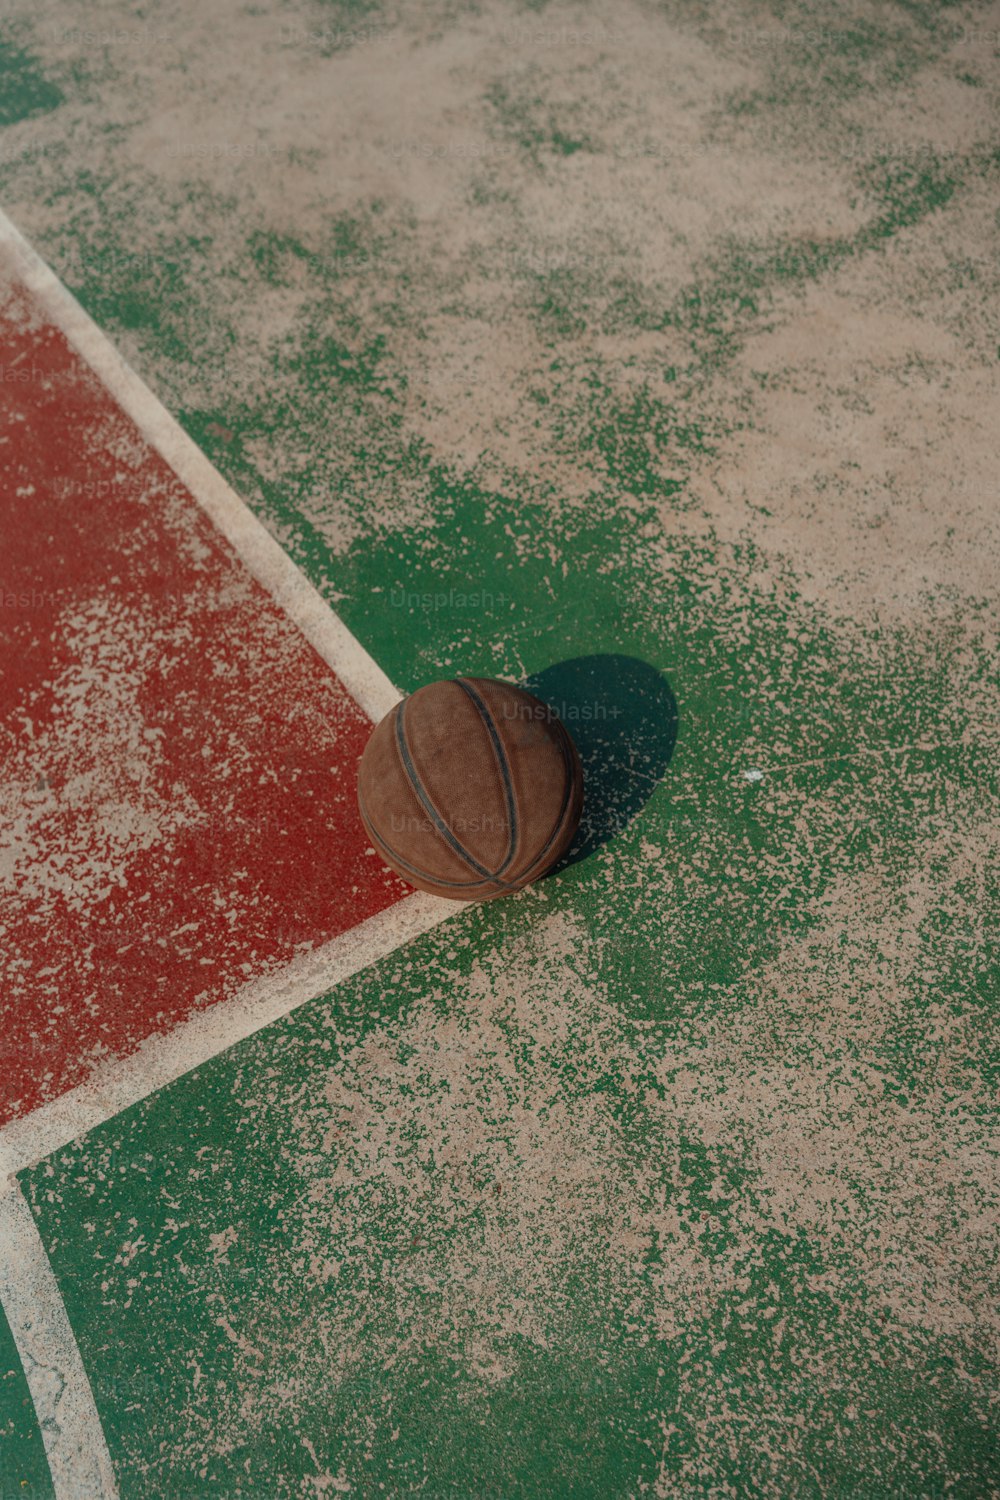 バスケットボールコートの床に横たわるバスケットボール